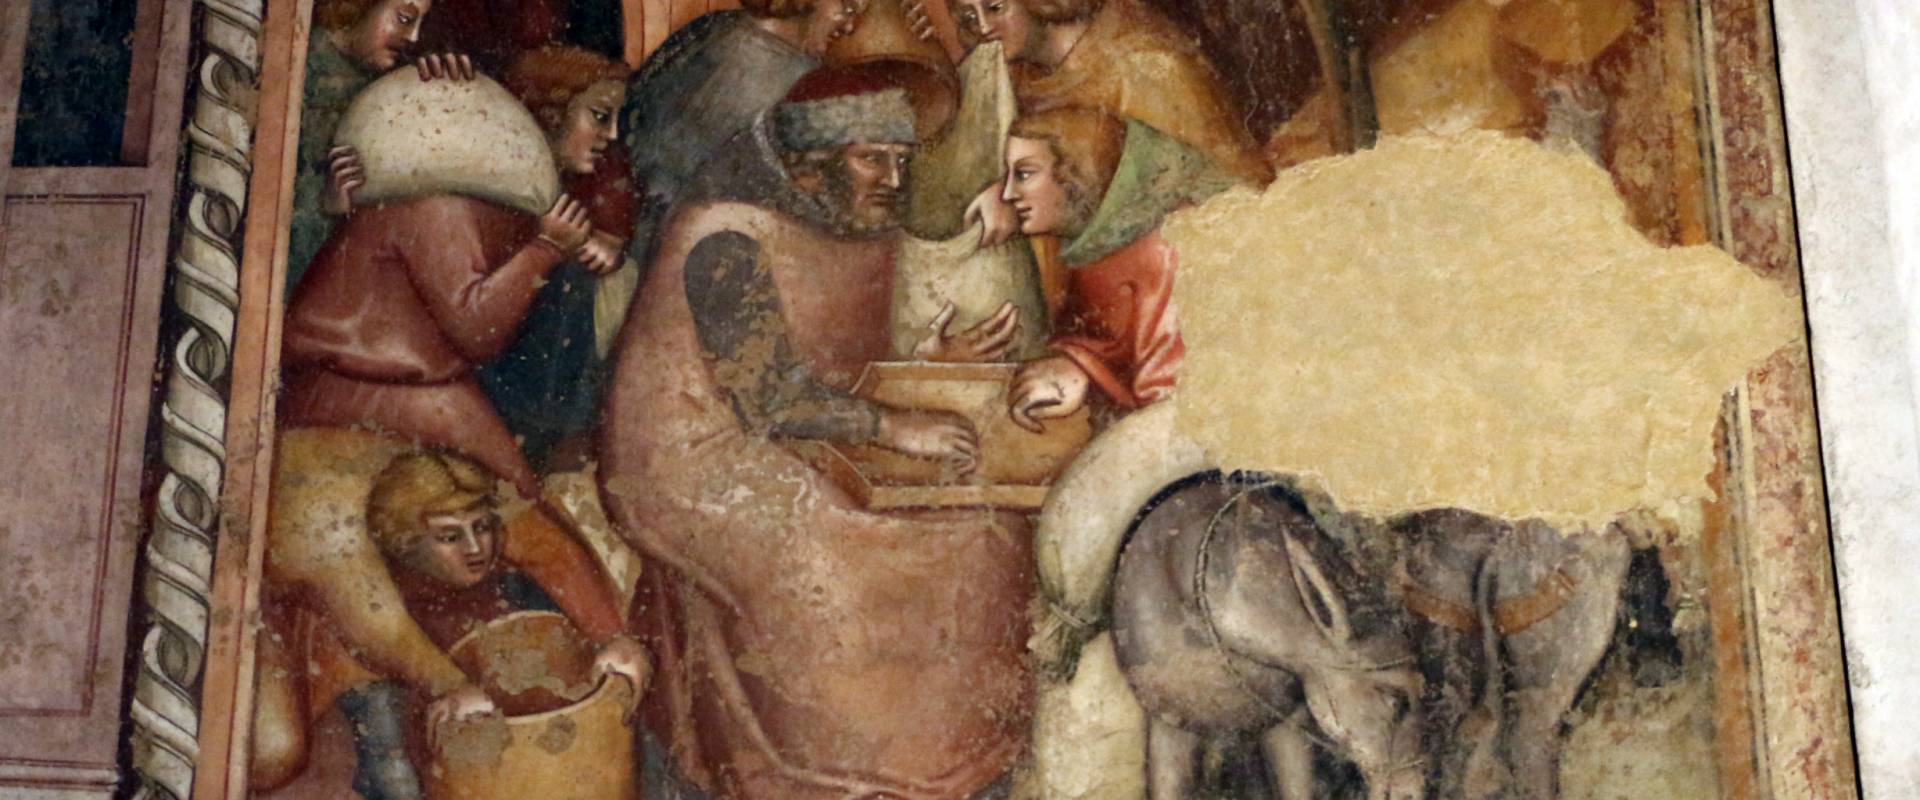 Anonimo bolognese, storie di giuseppe ebreo, 1330-75 ca., 09 consegna dei sacchi di grano photo by Sailko